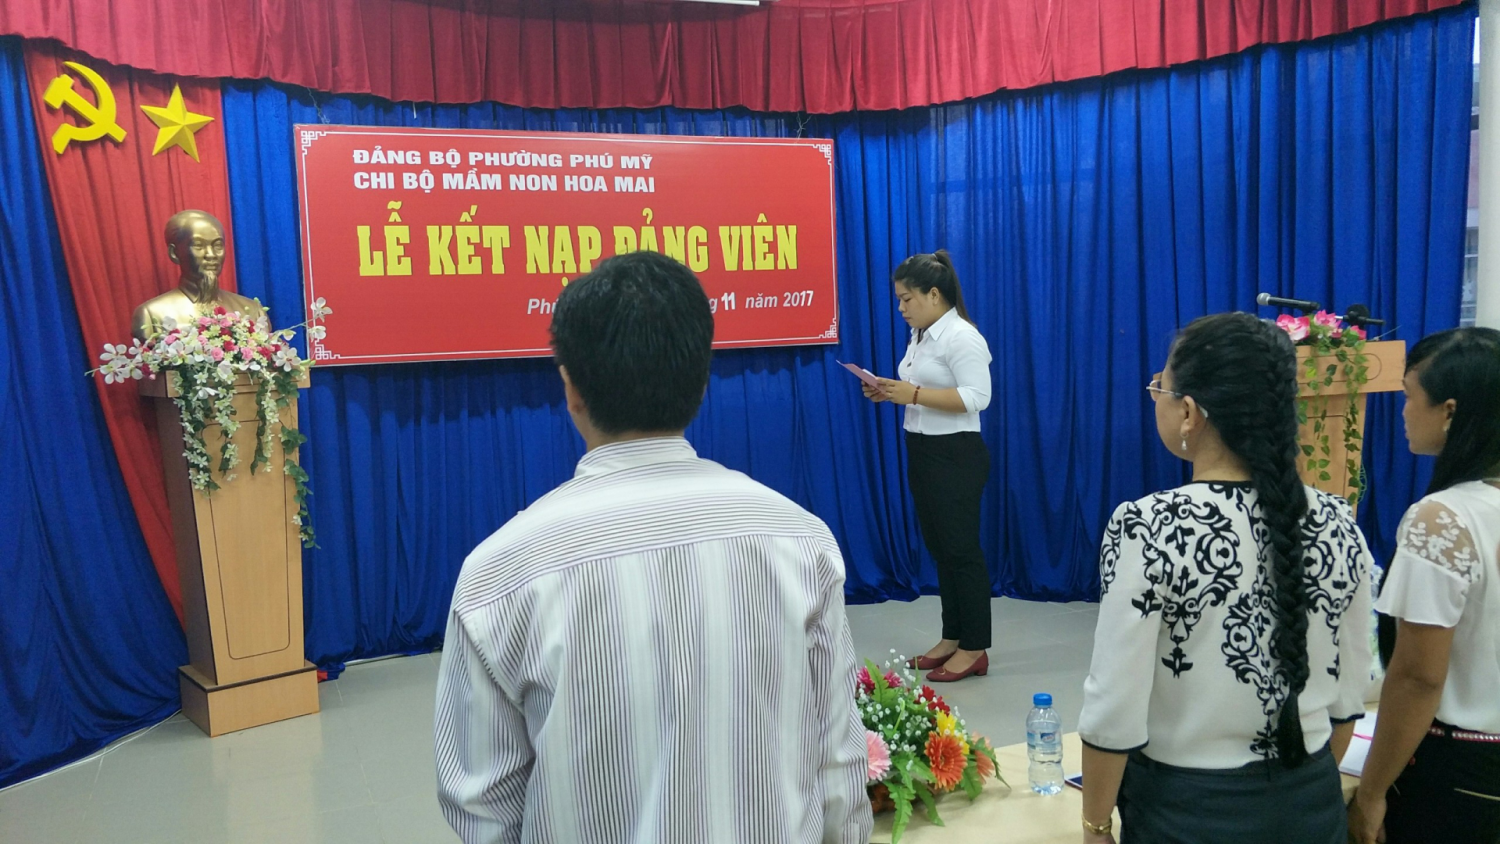  Đ/c Mai Thị Thùy Dương đọc tuyên thệ trung thành tuyệt đối với lý tưởng Cộng sản